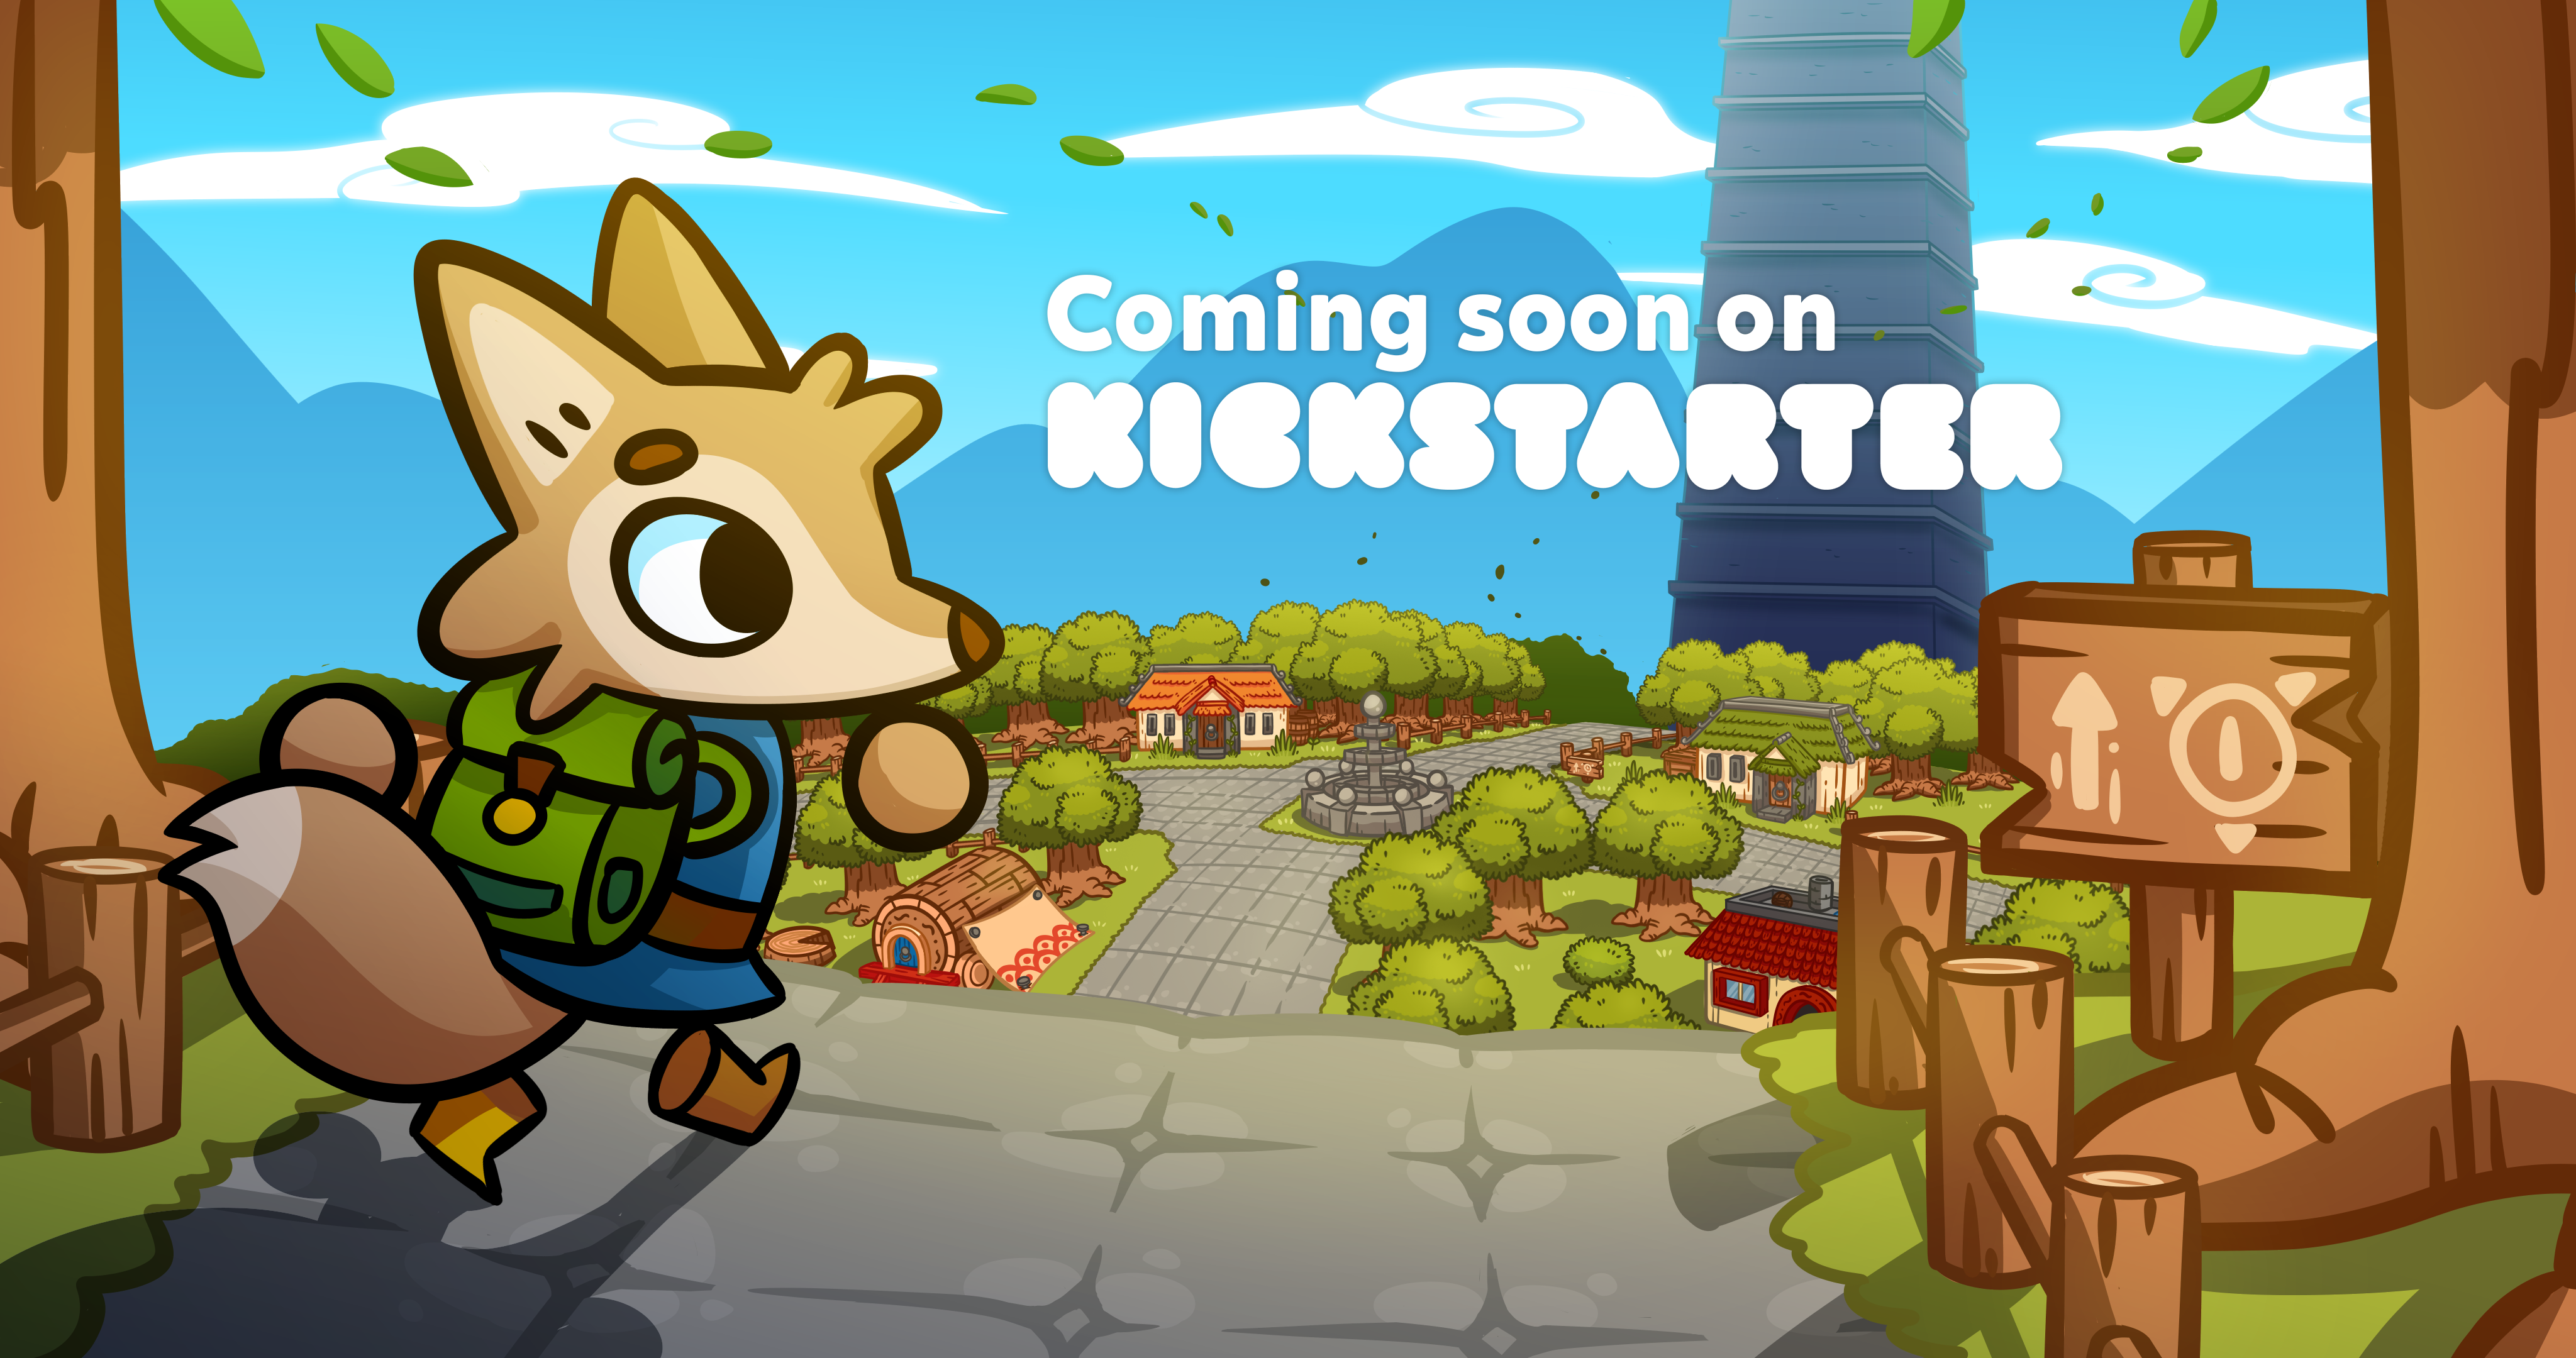 Soon on Kickstarter!